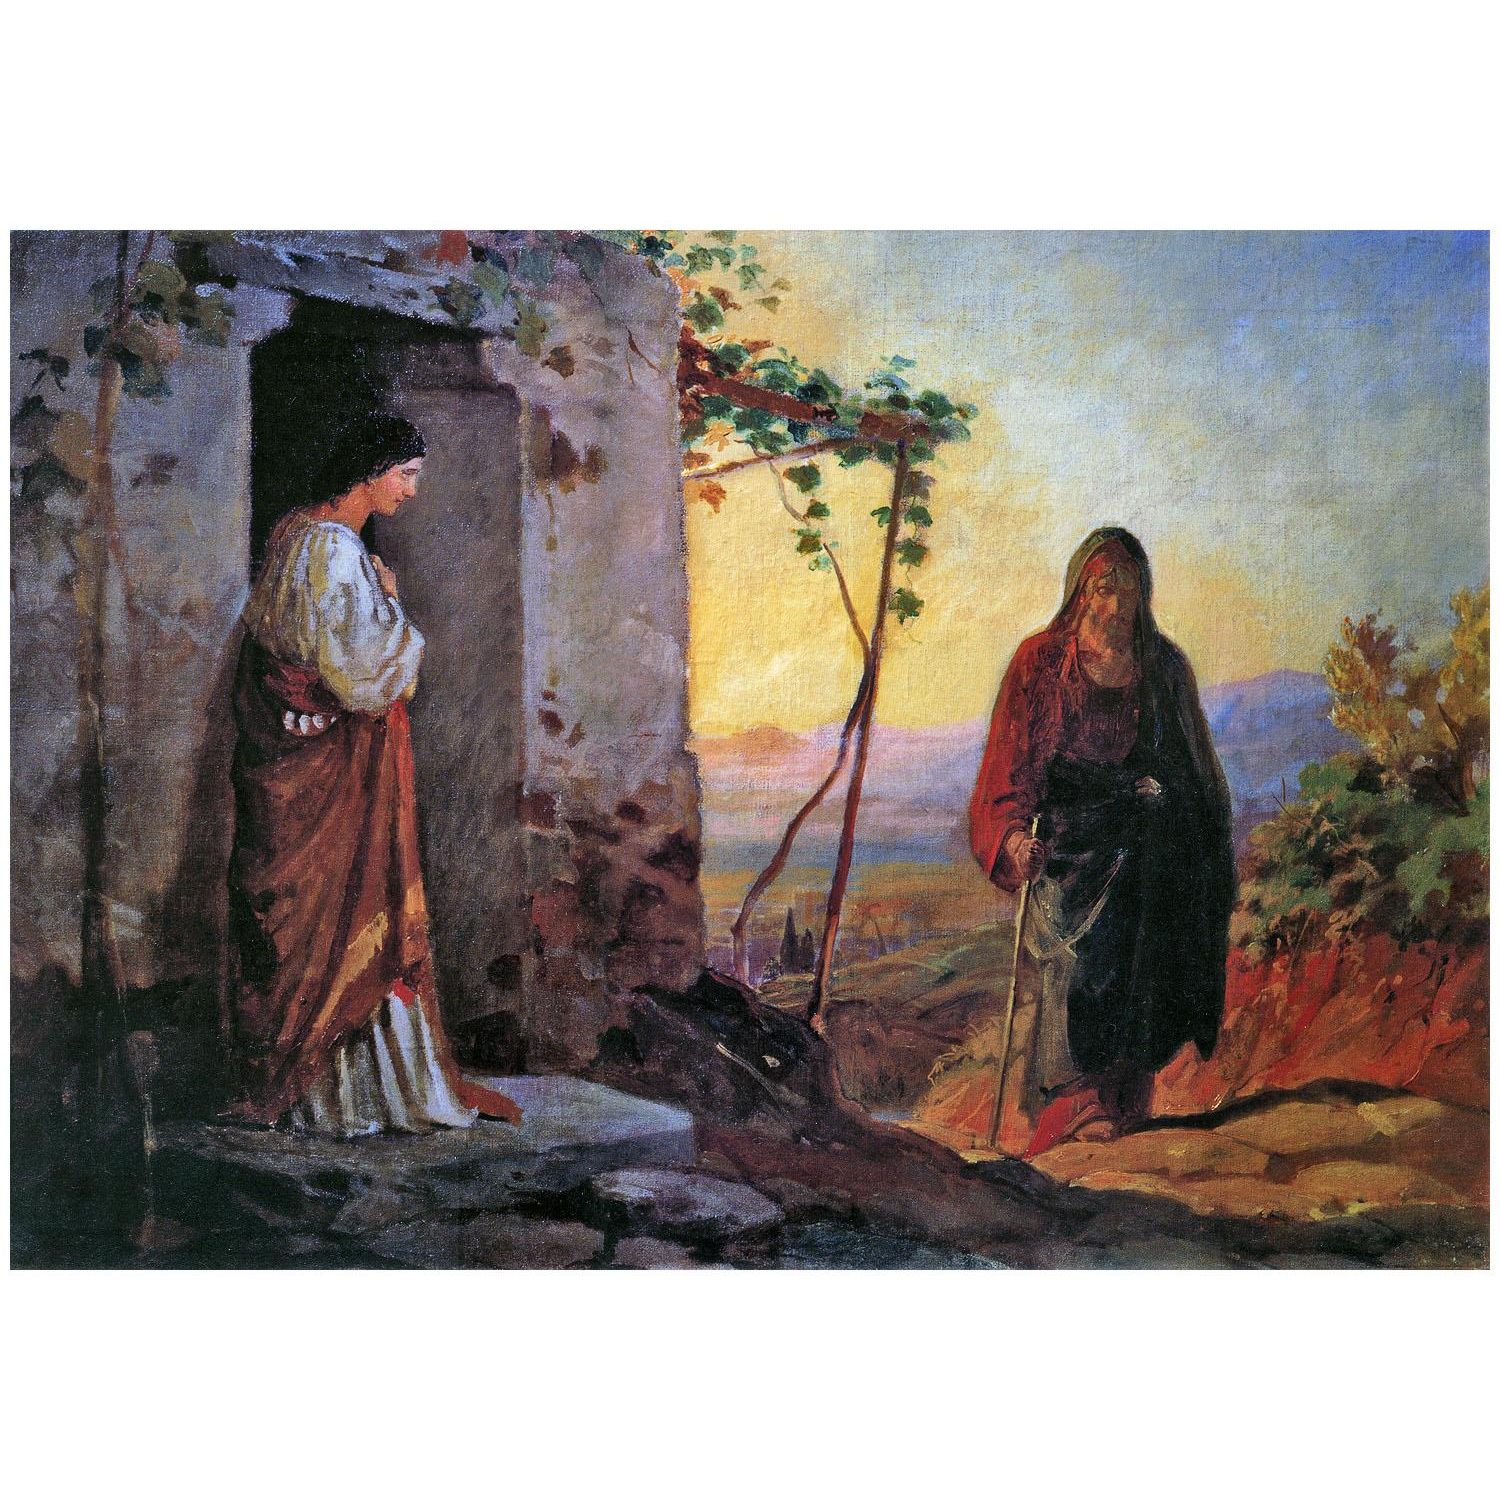 Николай Ге. Мария, сестра Лазаря, встречает Иисуса. 1864. Третьяковская галерея